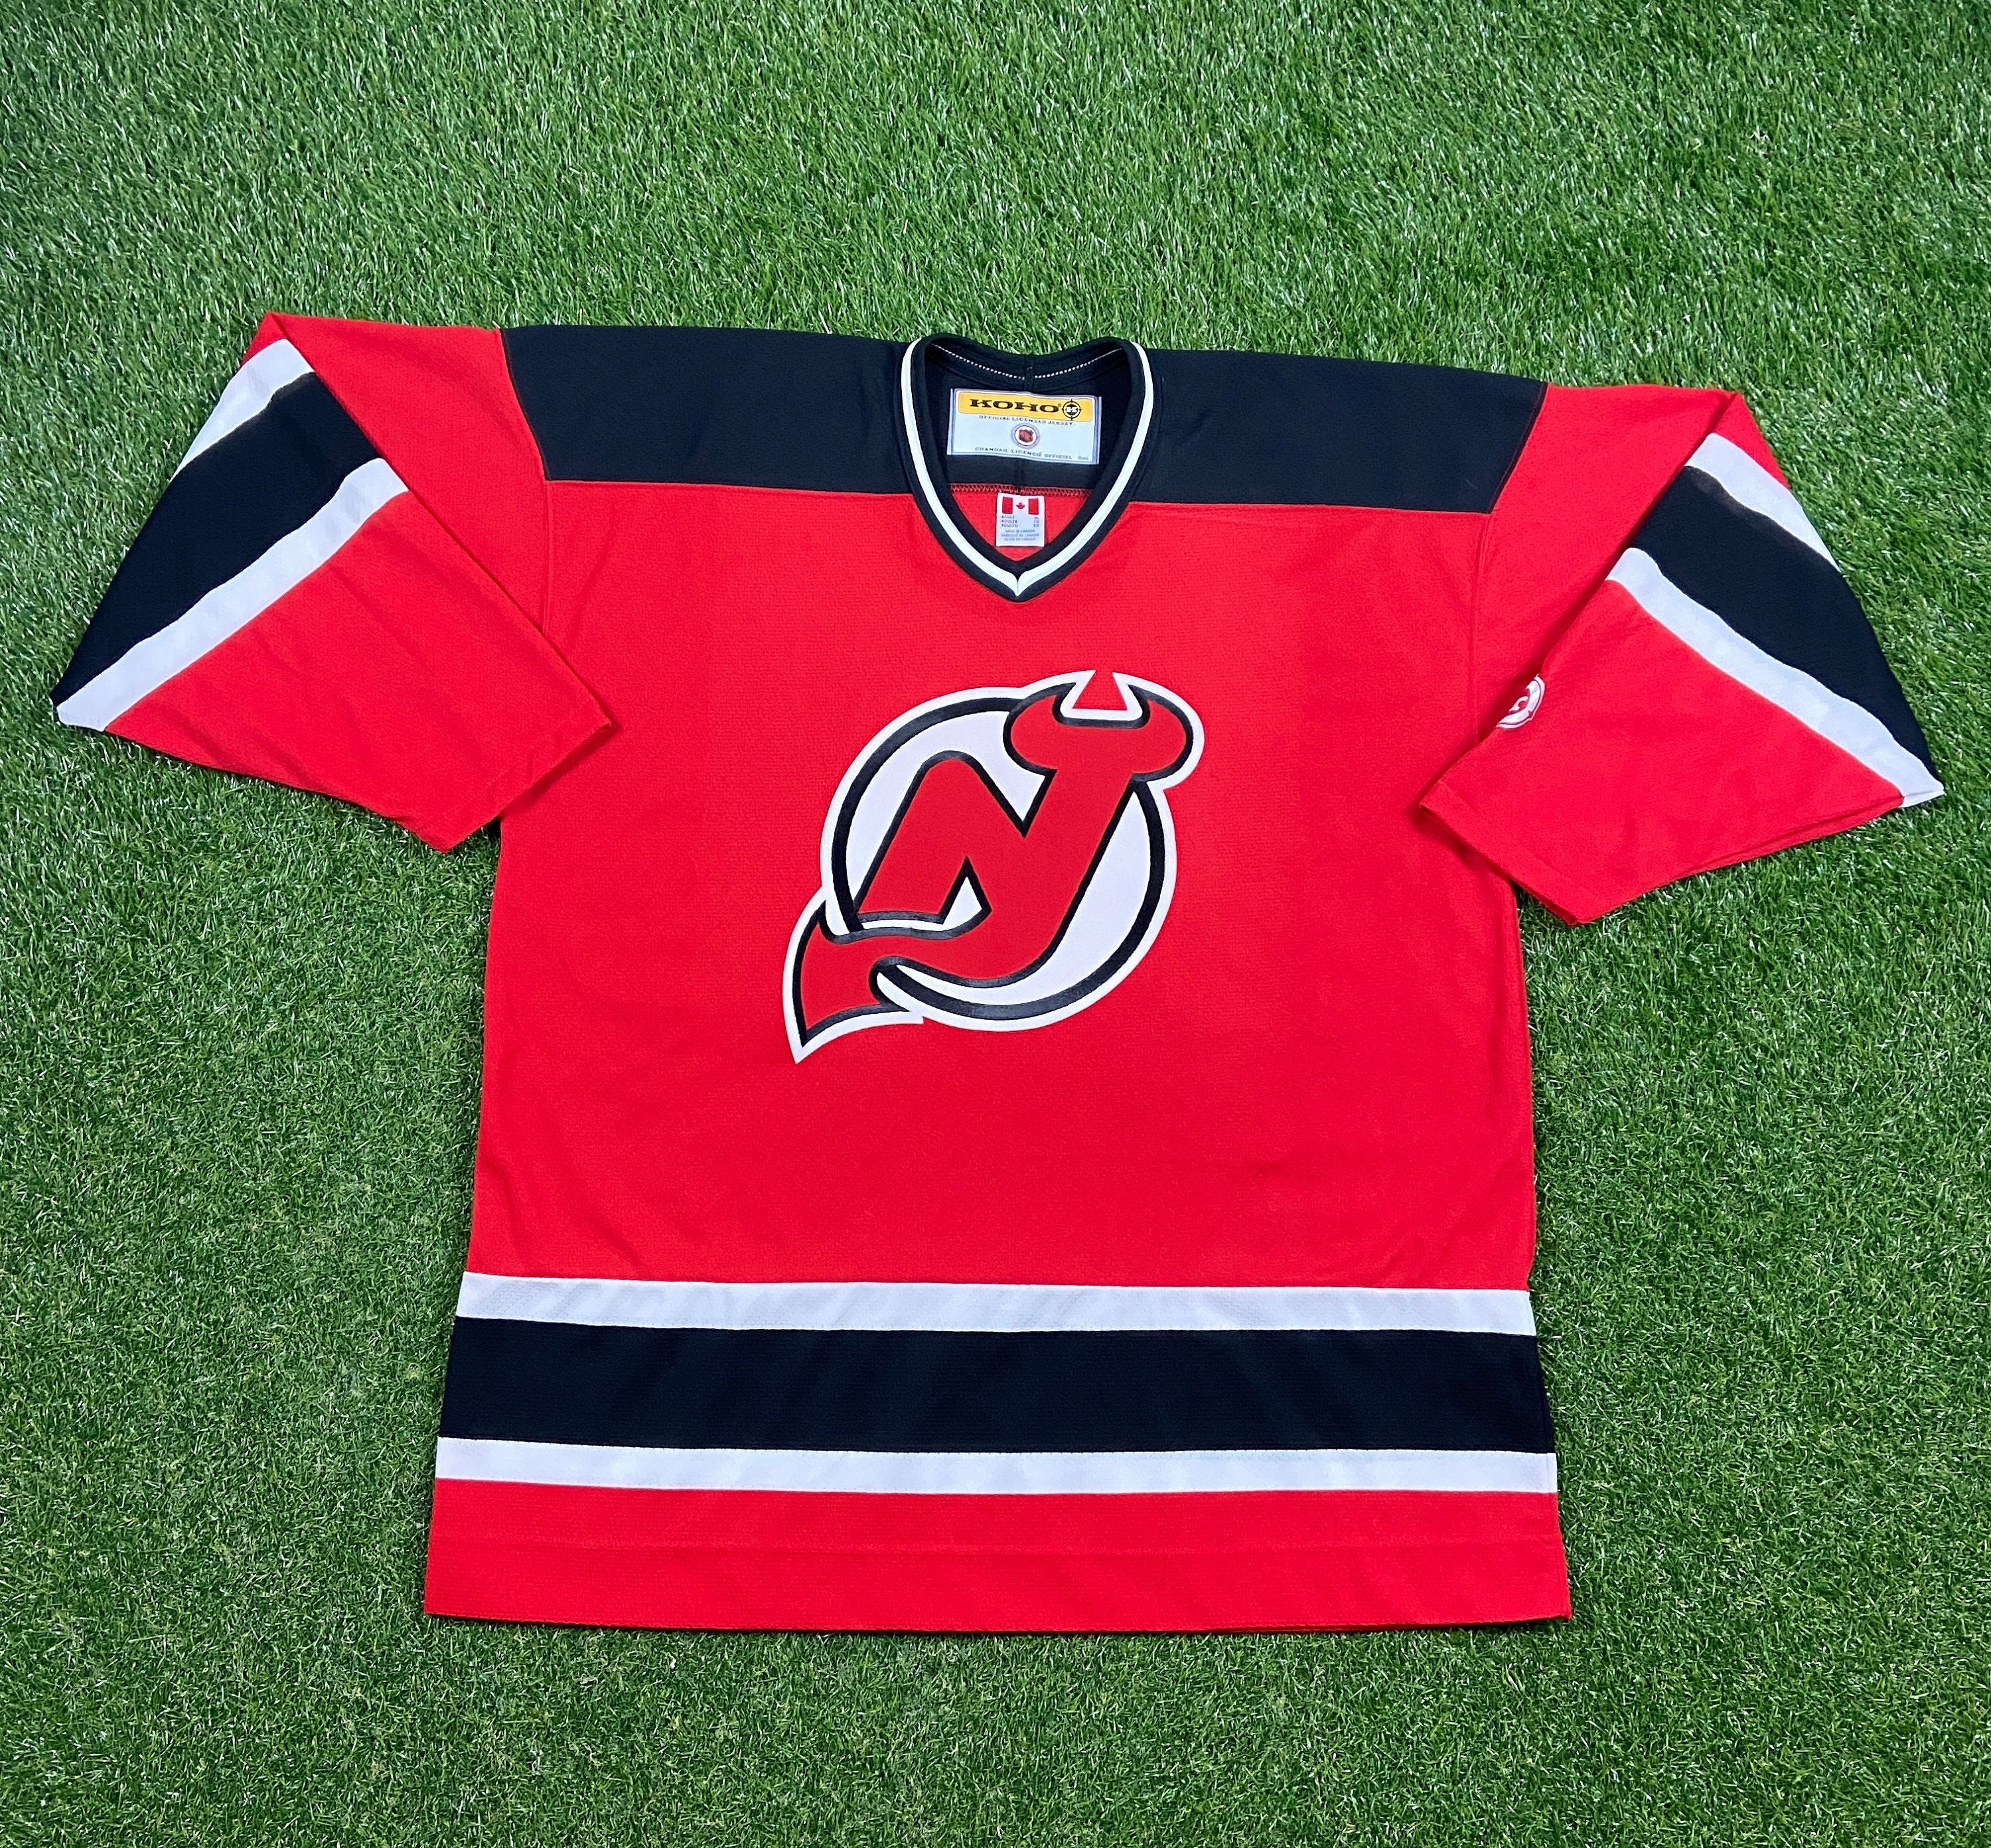 Reebok/CCM Boy’s Sz L/XL NHL New Jersey Devils Jersey ~White/Red/Black~